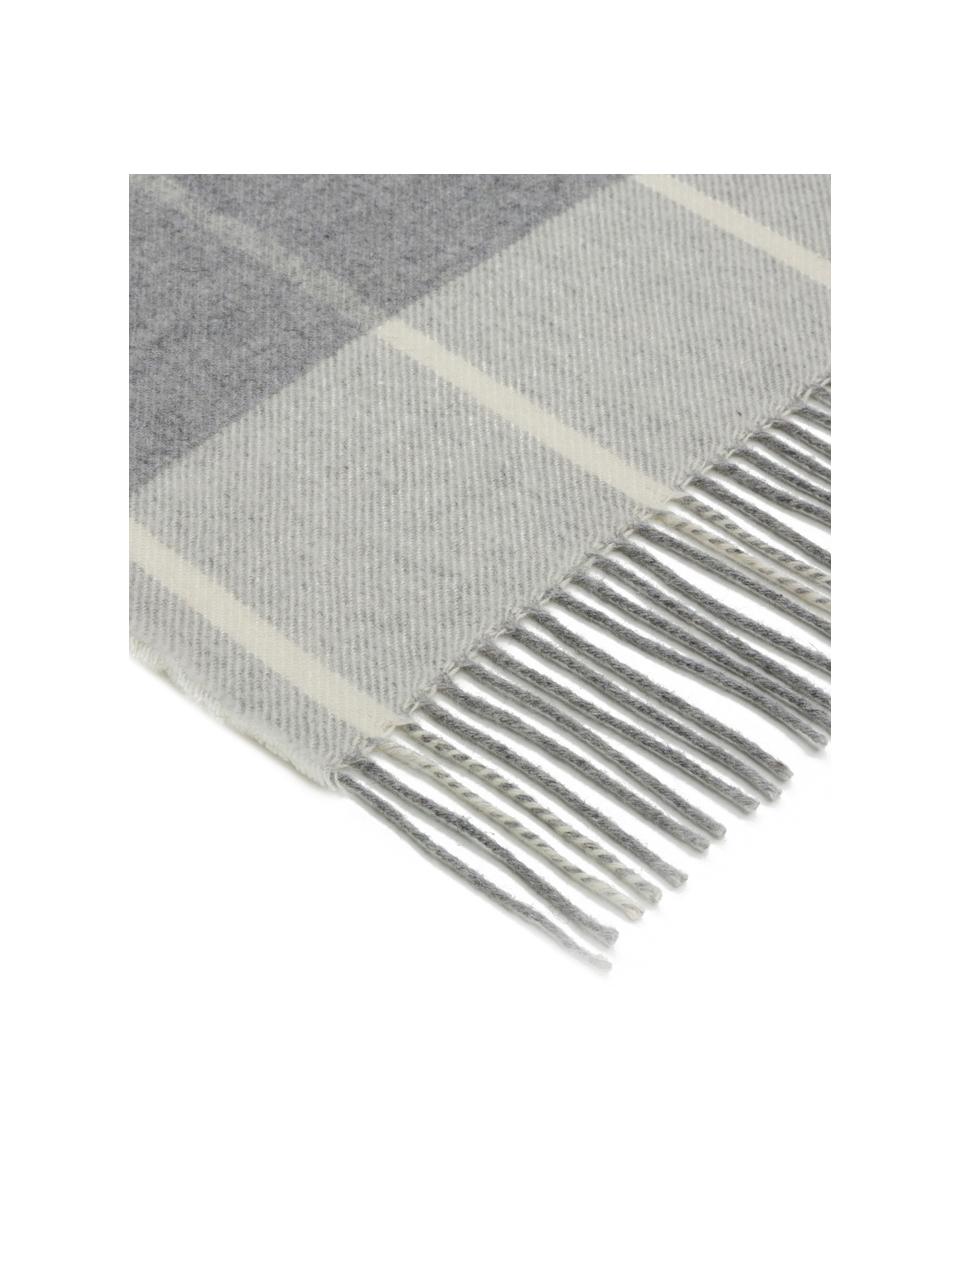 Manta de lana de cachemir Farison, 90% lana, 10% cachemir, Gris claro, gris, An 140 x L 200 cm